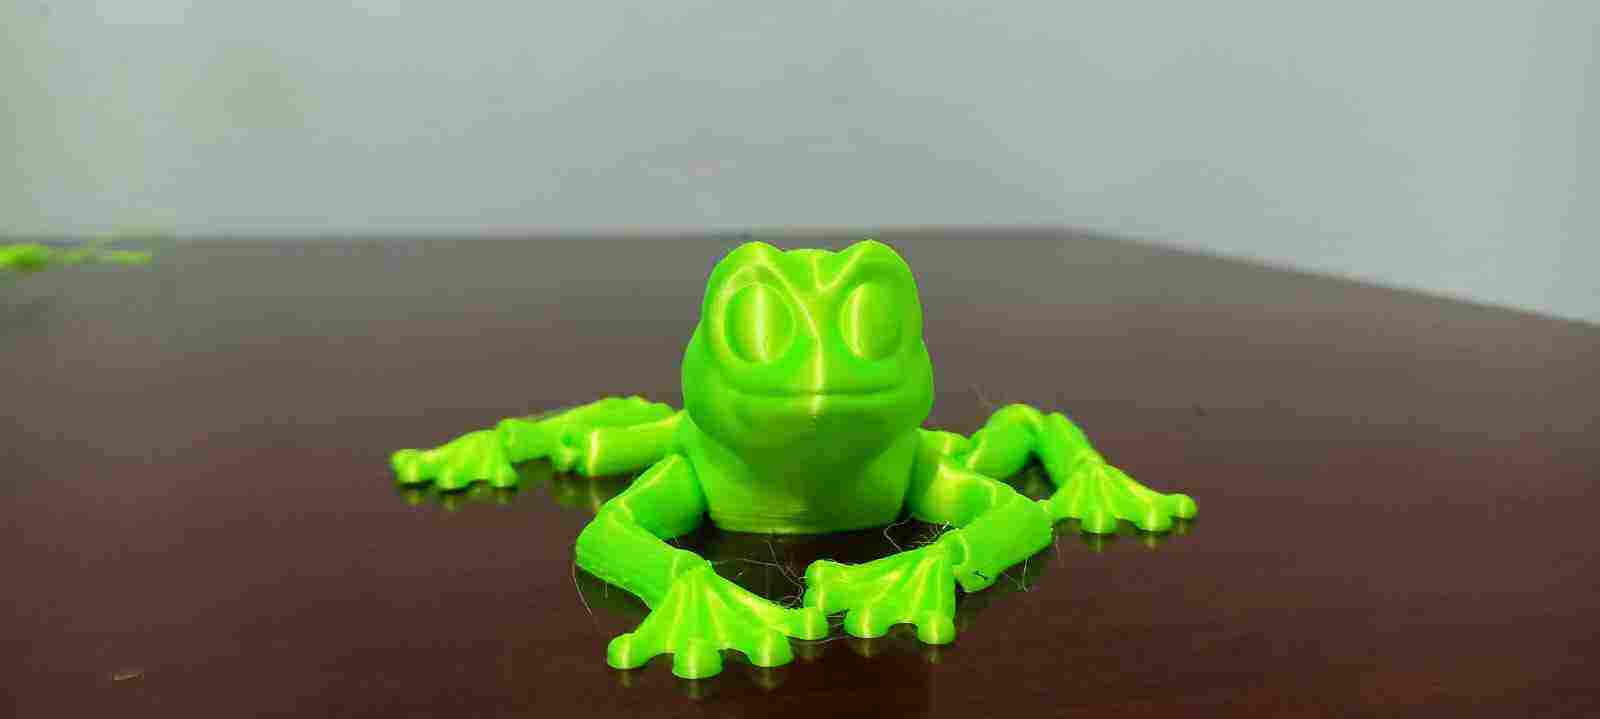 3d Model Rubber Frog